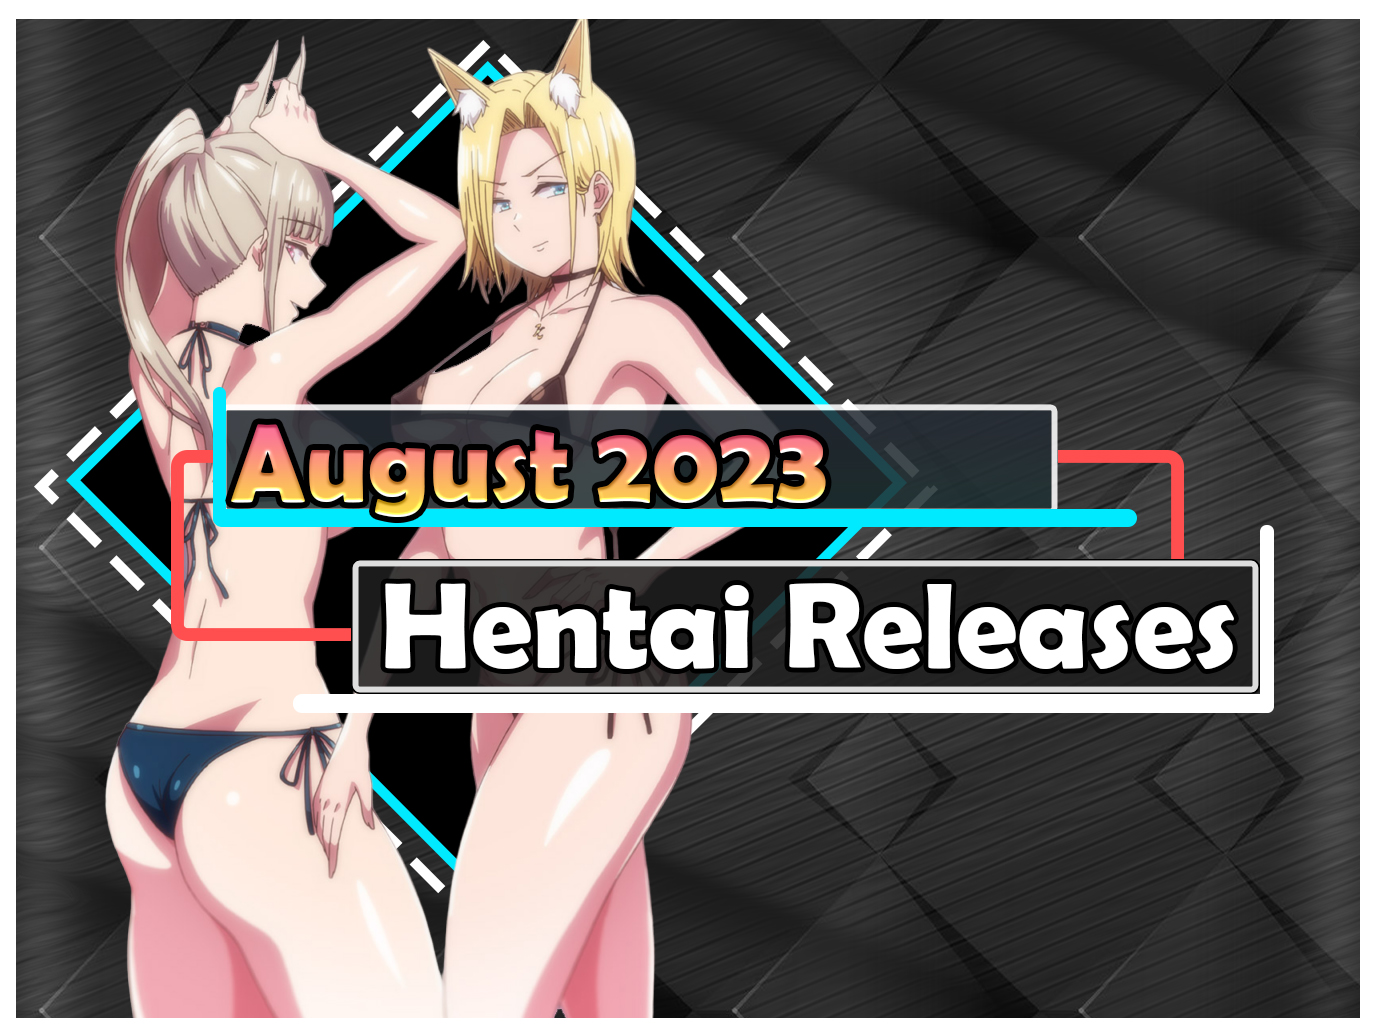 August 2023 Hentai Releases - EroEro News (EN)